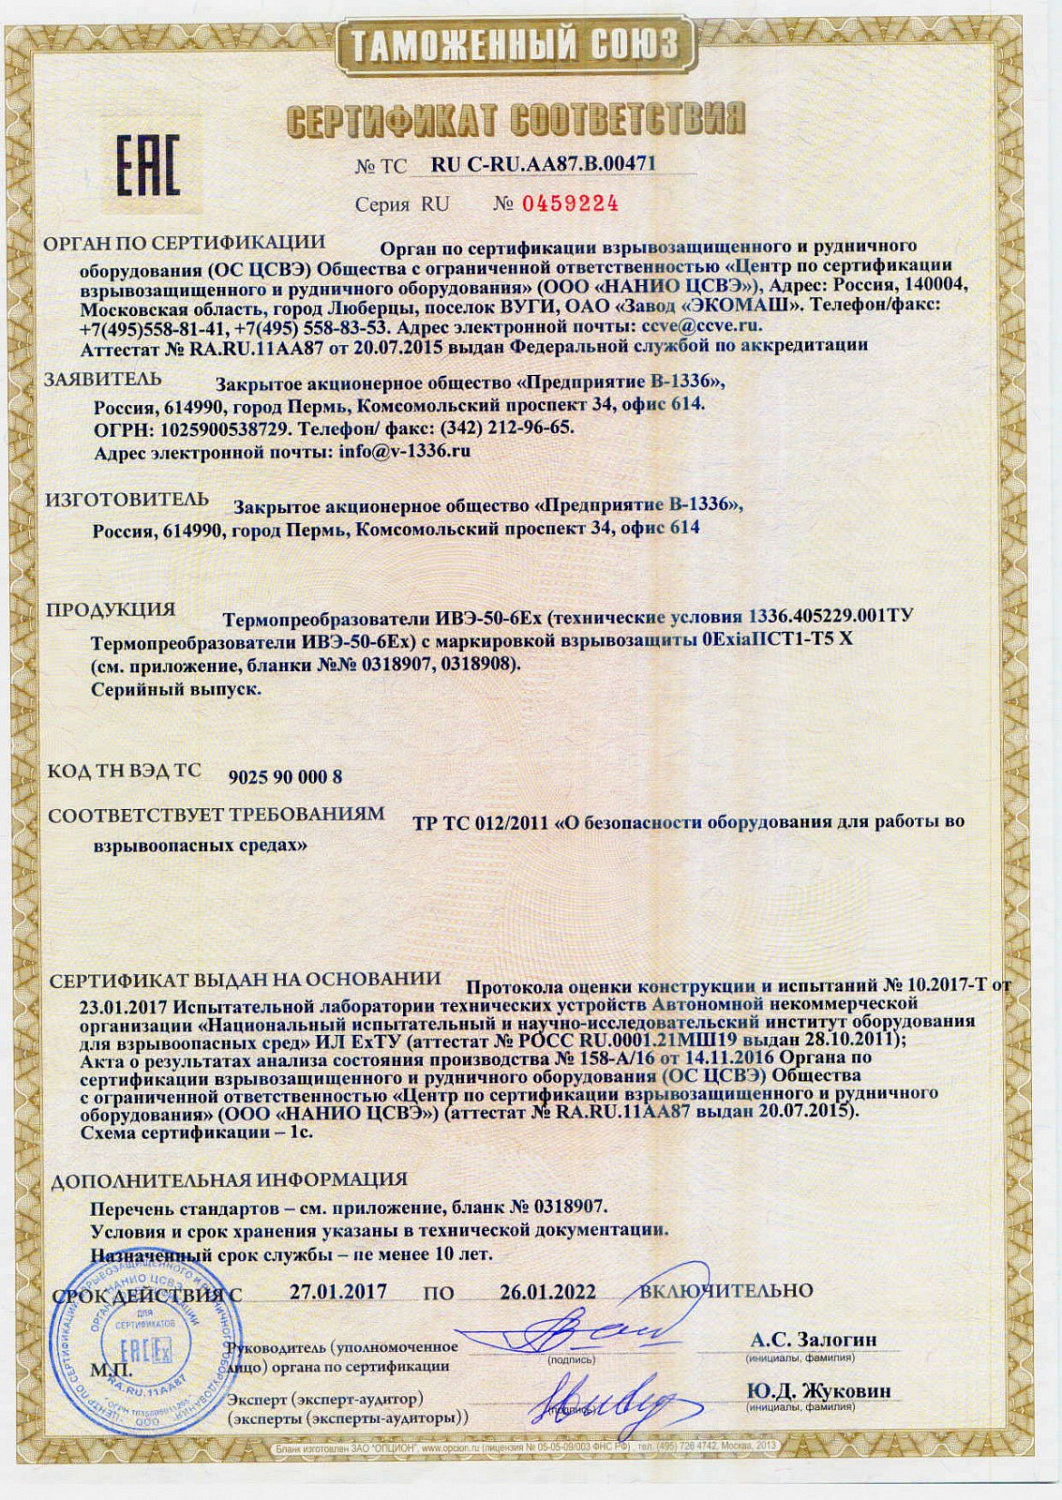  Сертификация термопреобразователя ИВЭ-50-6Ex